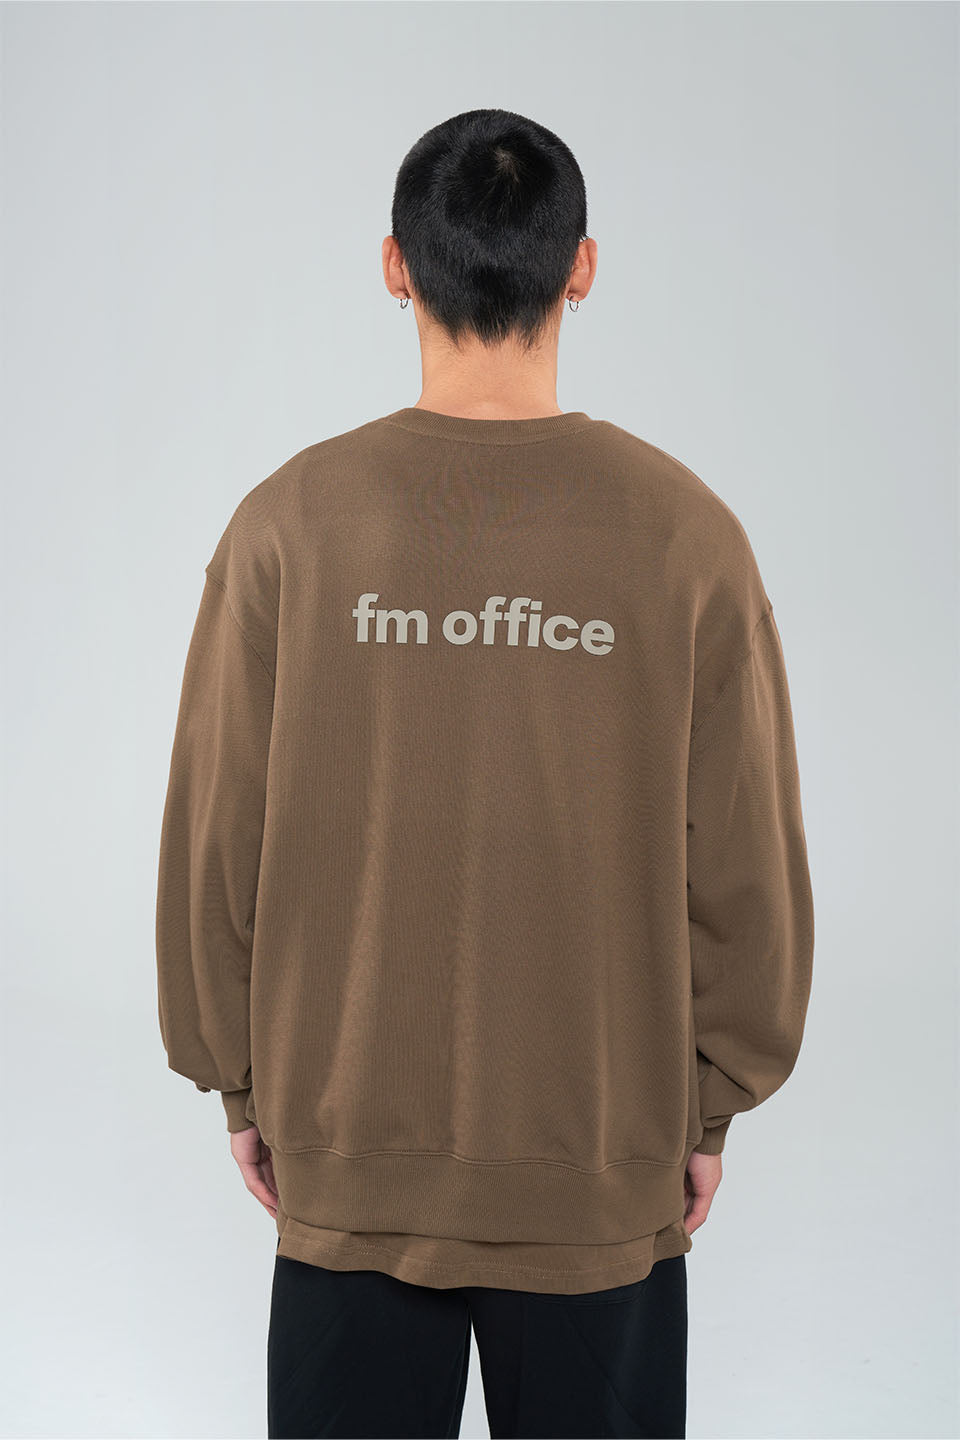 FM Office Logo Round Neck sweater